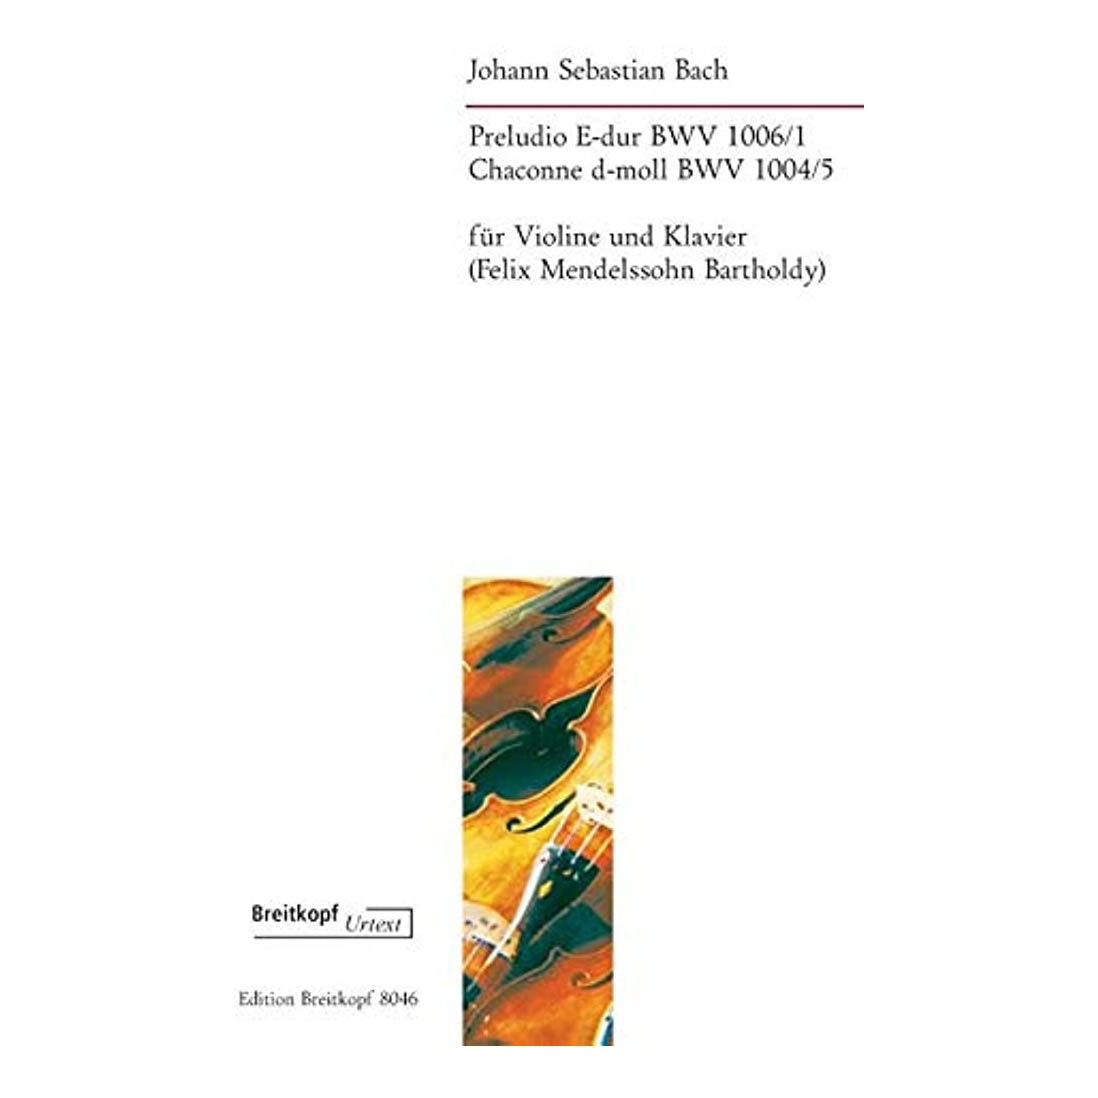 J. S. Bach - Preludio E-dur  Chaconne  d-moll